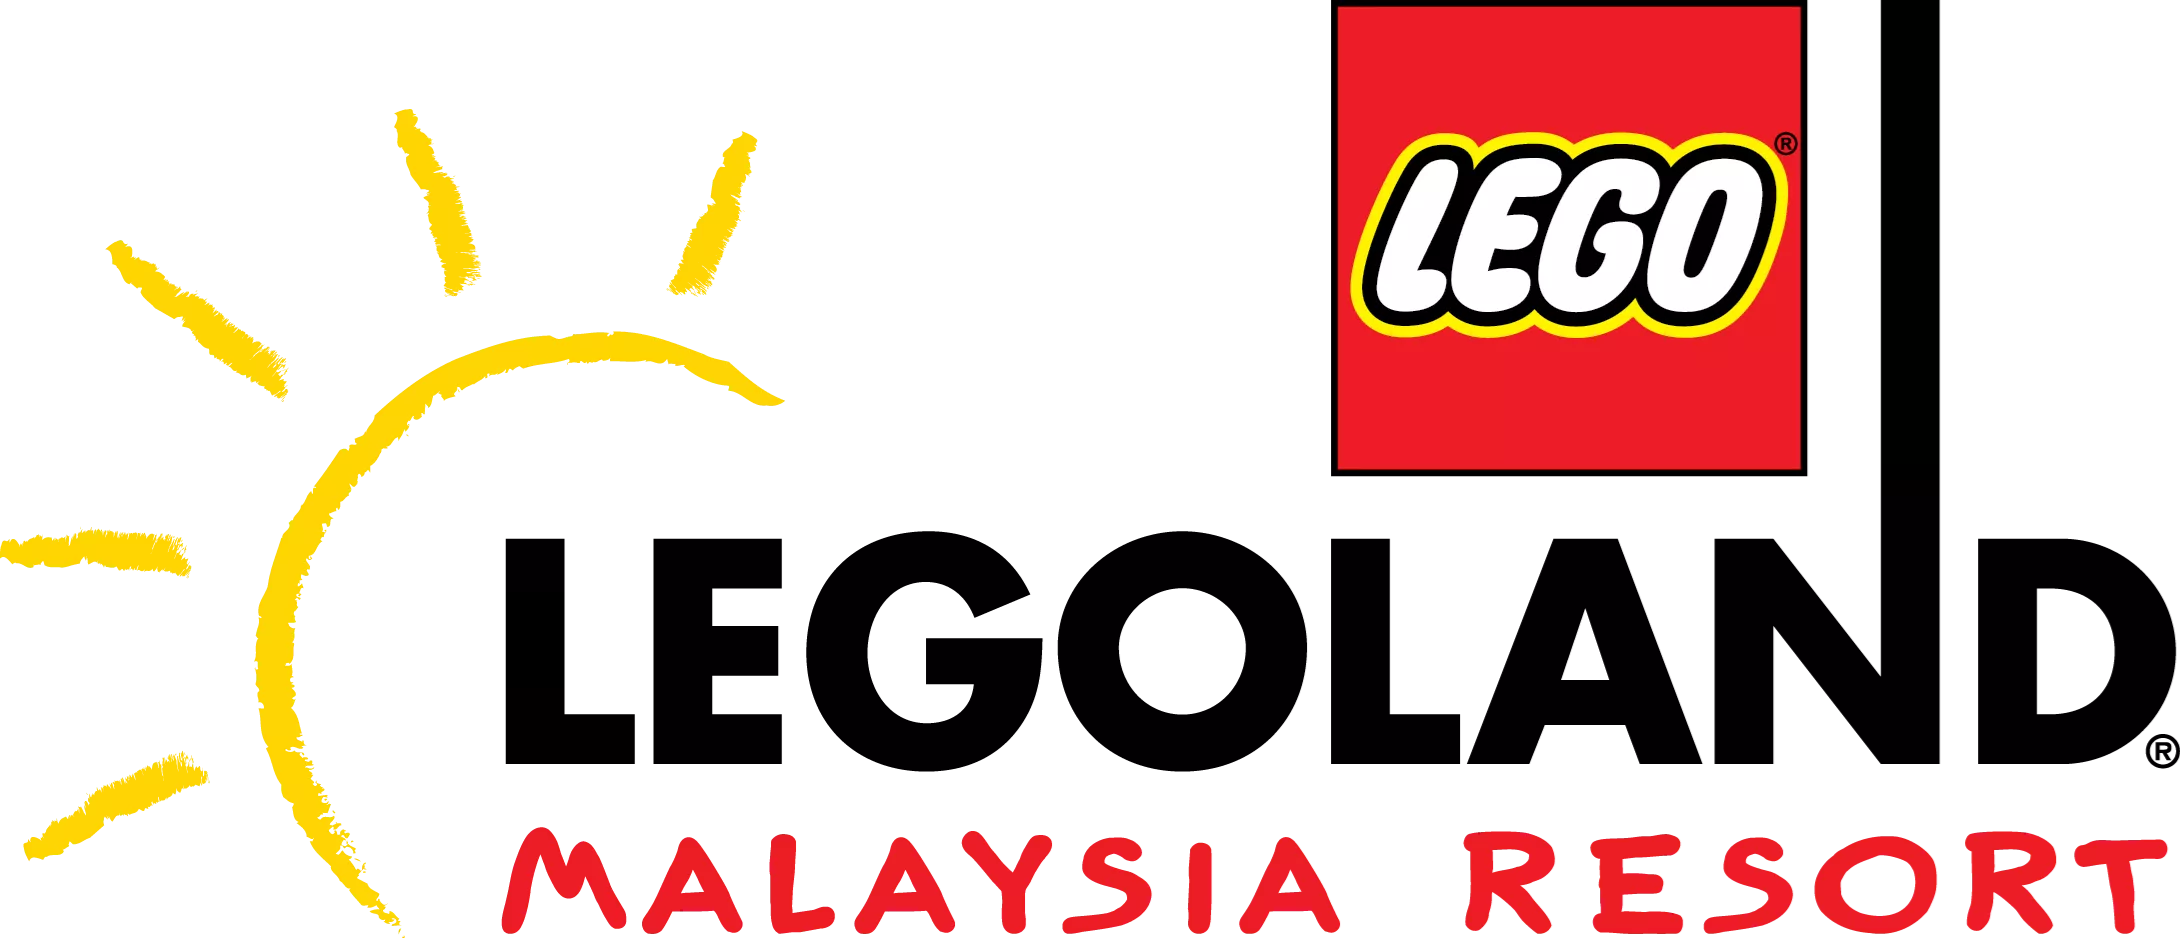 LEGOLAND Malaysia Resort Bkyr SMALL (1)